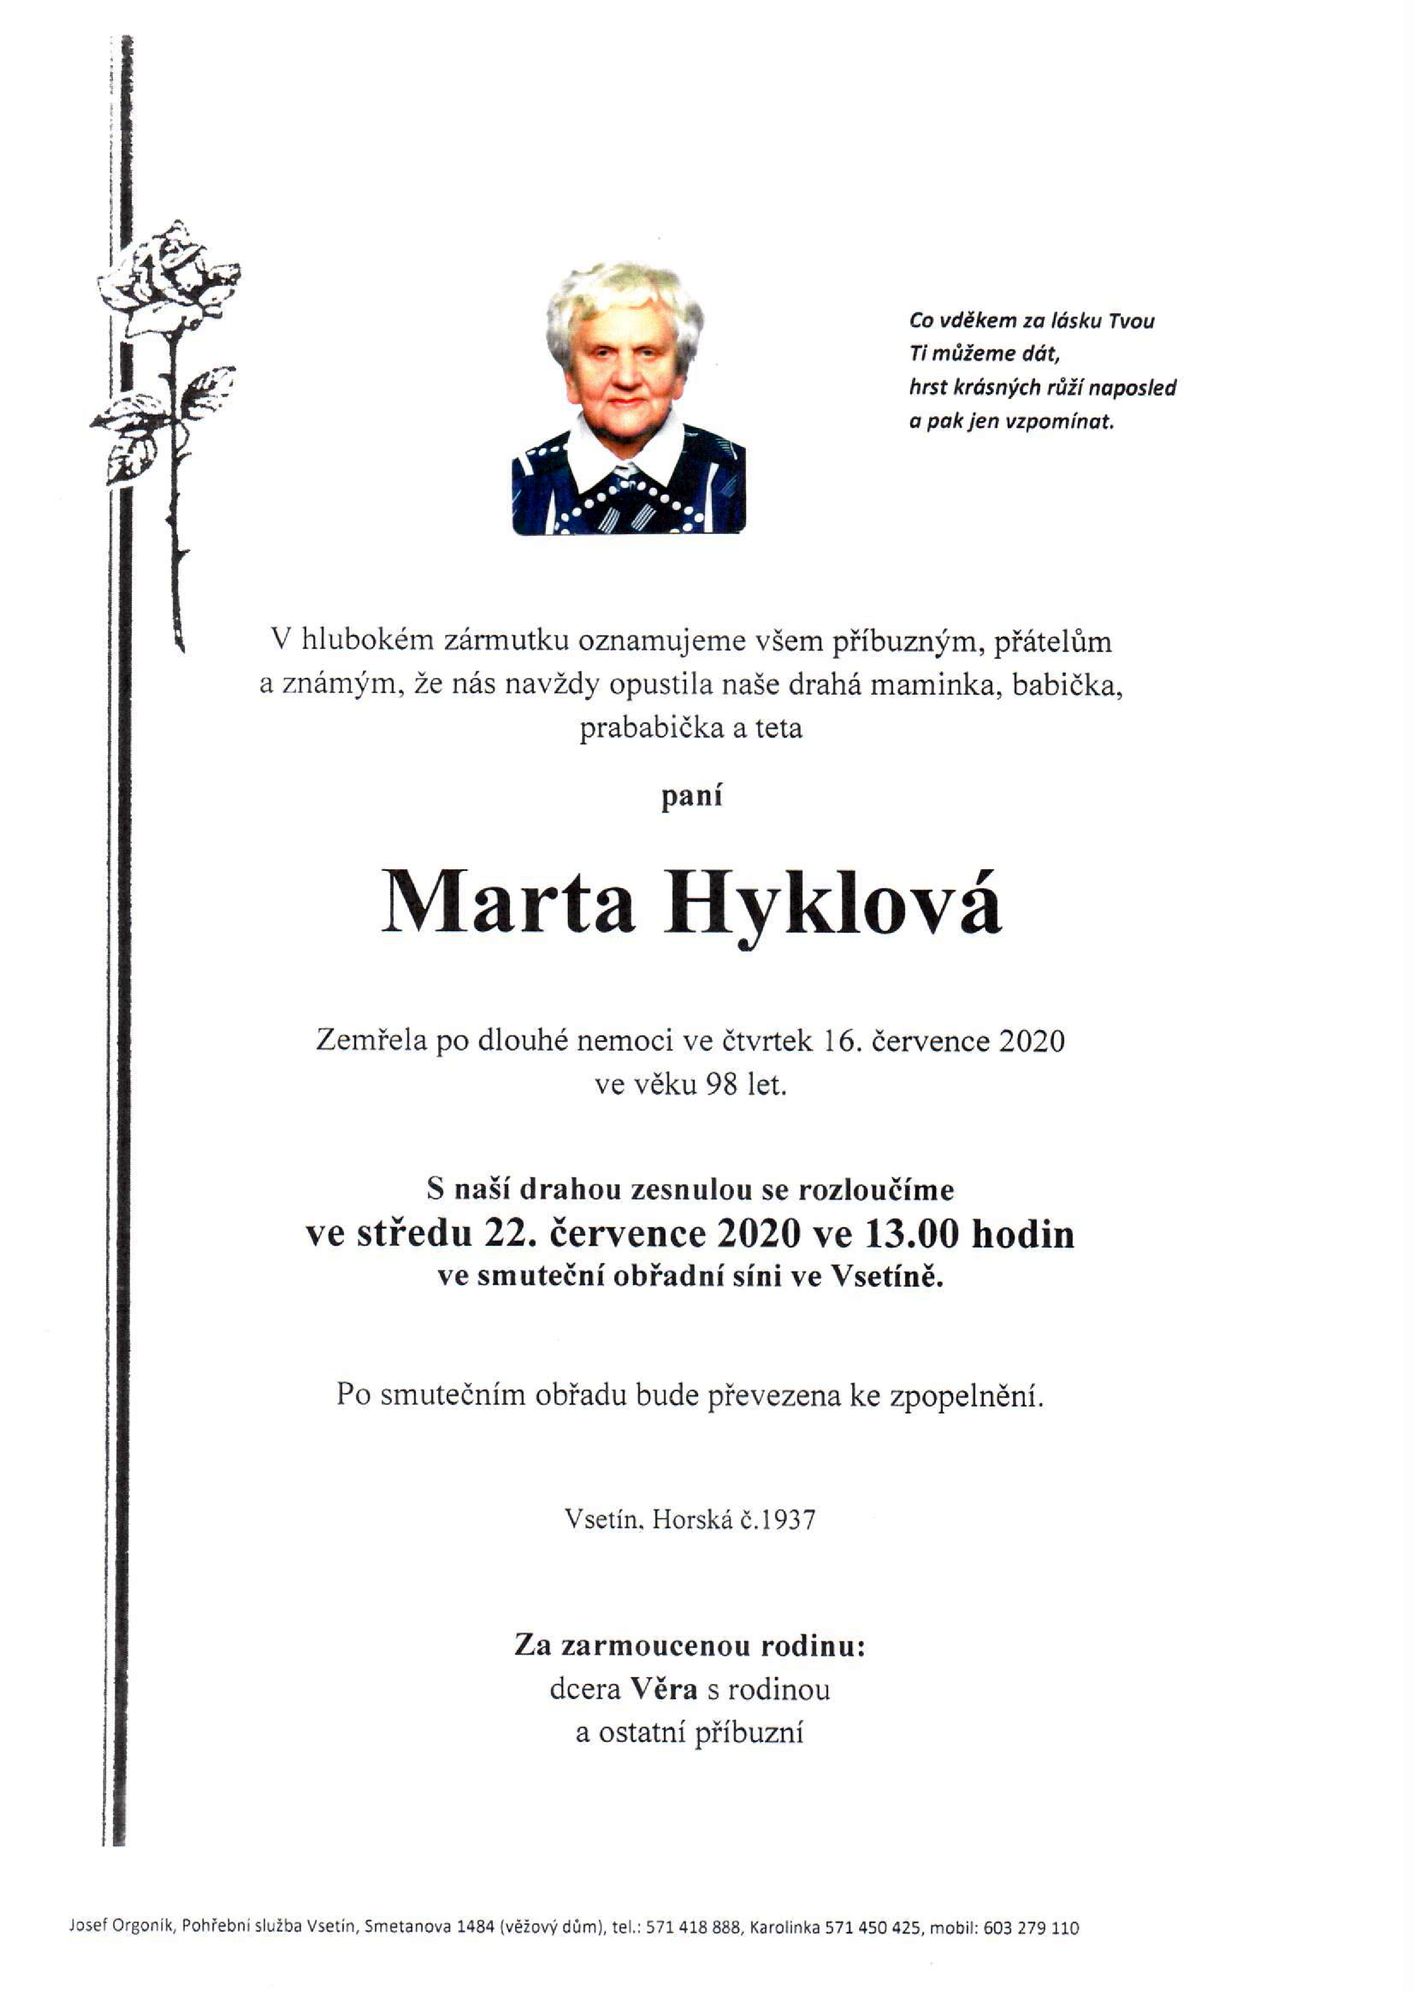 Marta Hyklová